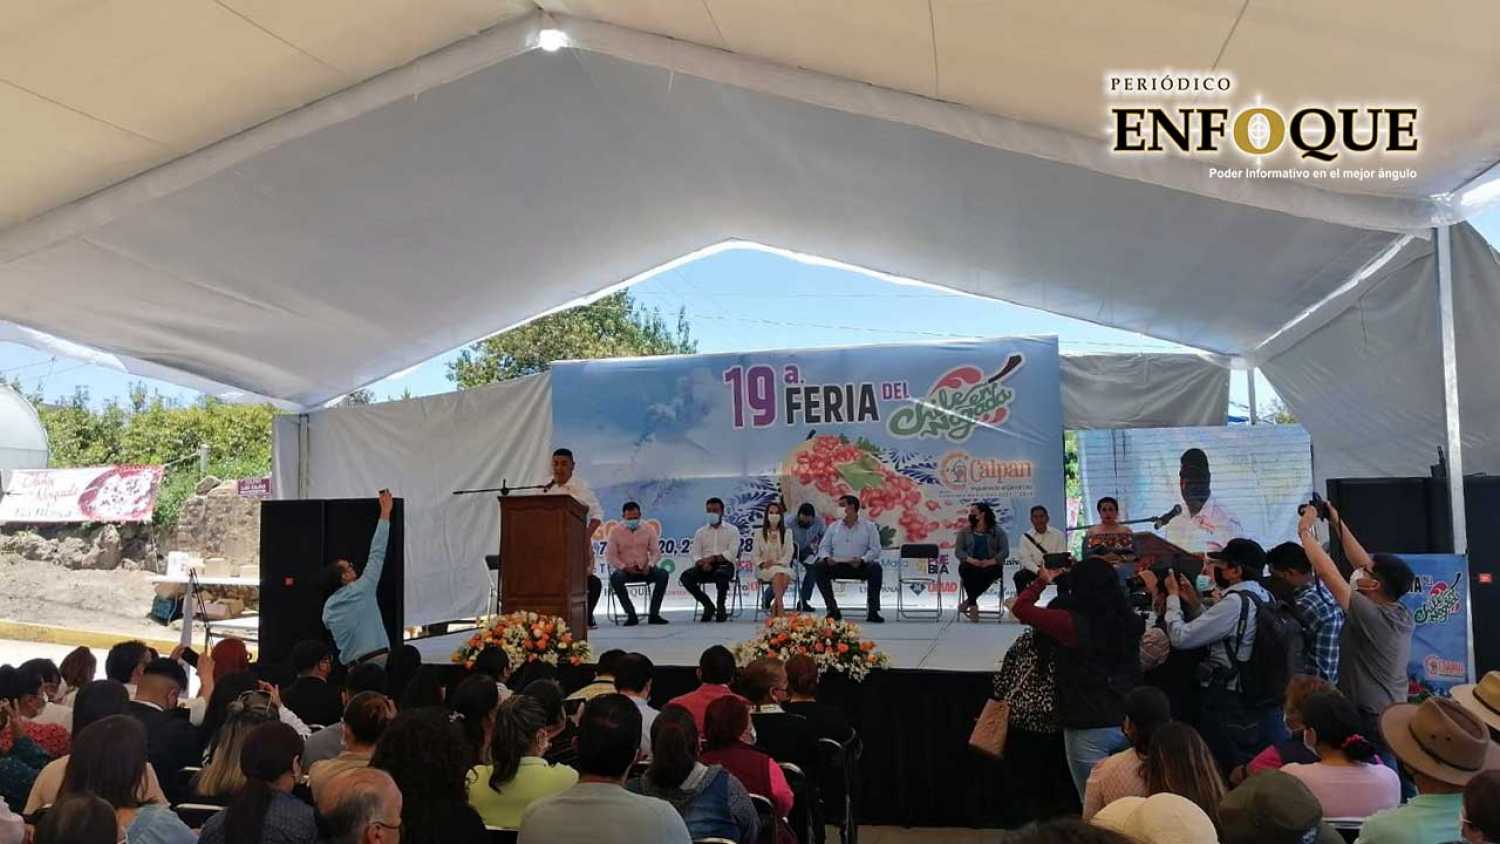 Gran éxito la inauguración de la 19ª. Feria del Chile en Nogada en Calpan que recibió a miles de visitantes generando gran derrama económica